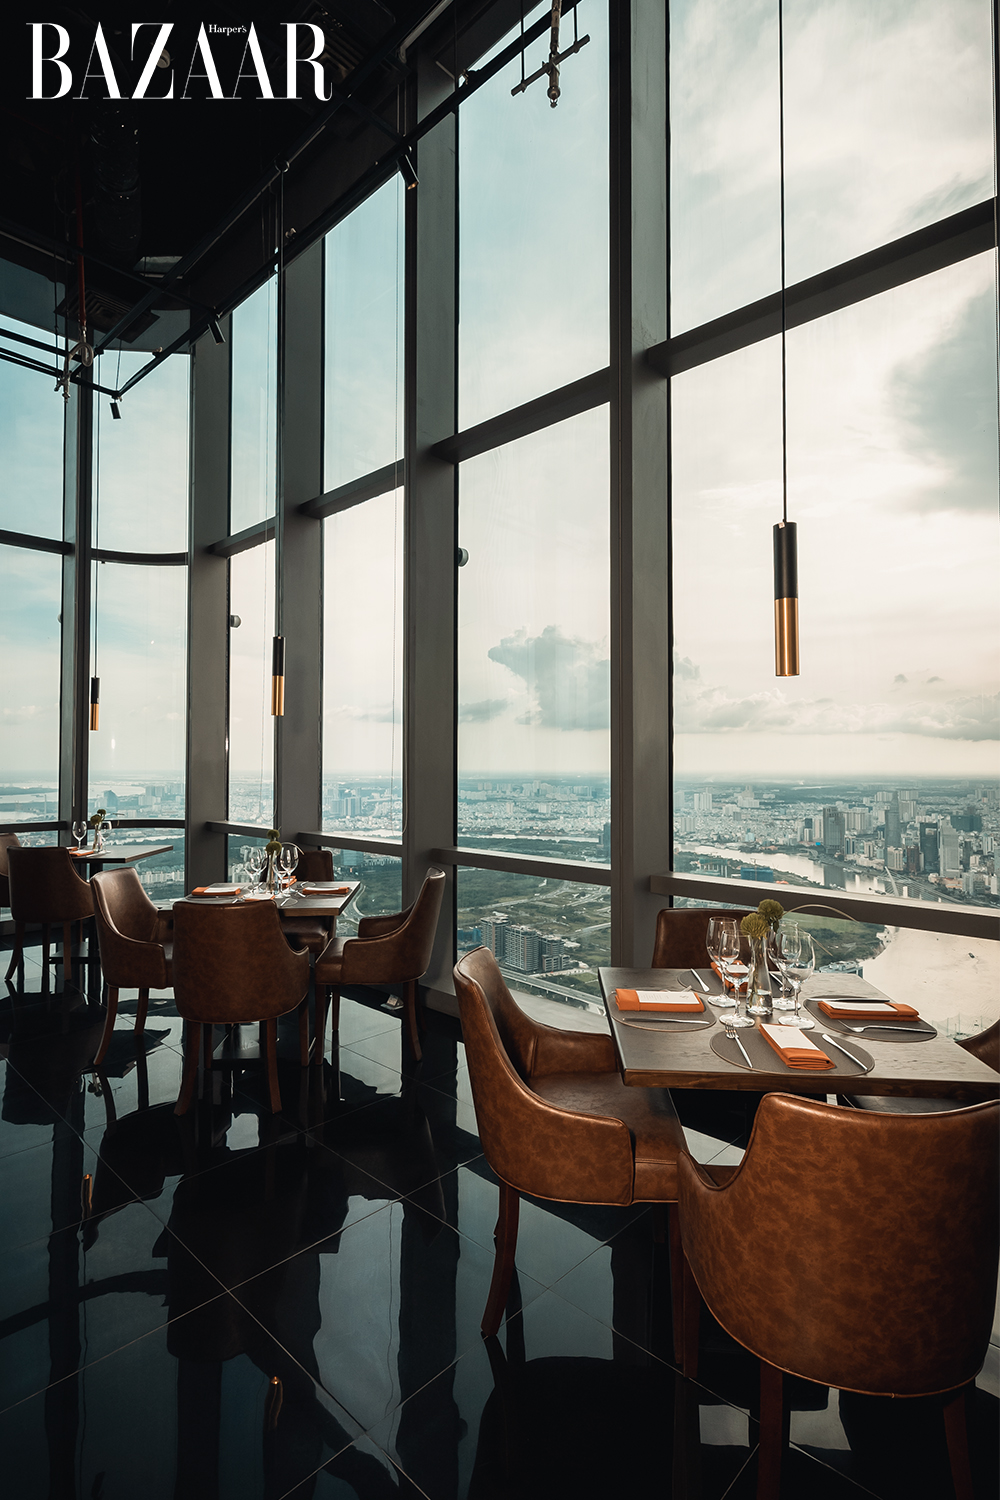 S79 Skyline Dining: Nhà hàng view trên cao sài gòn từ tầng 79